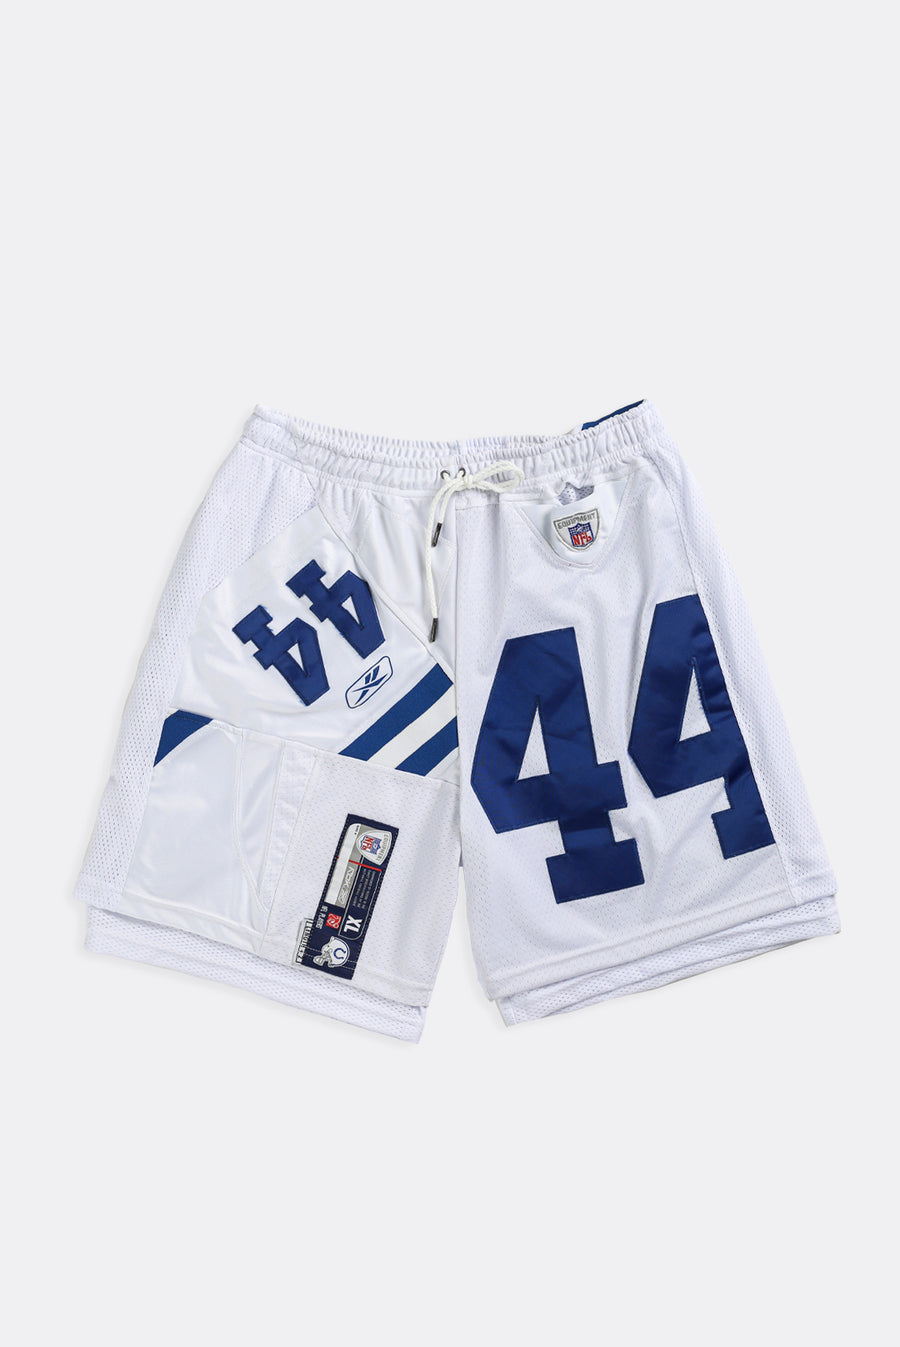 Unisex Rework Colts NFL Jersey Shorts - Women-L, Men-M